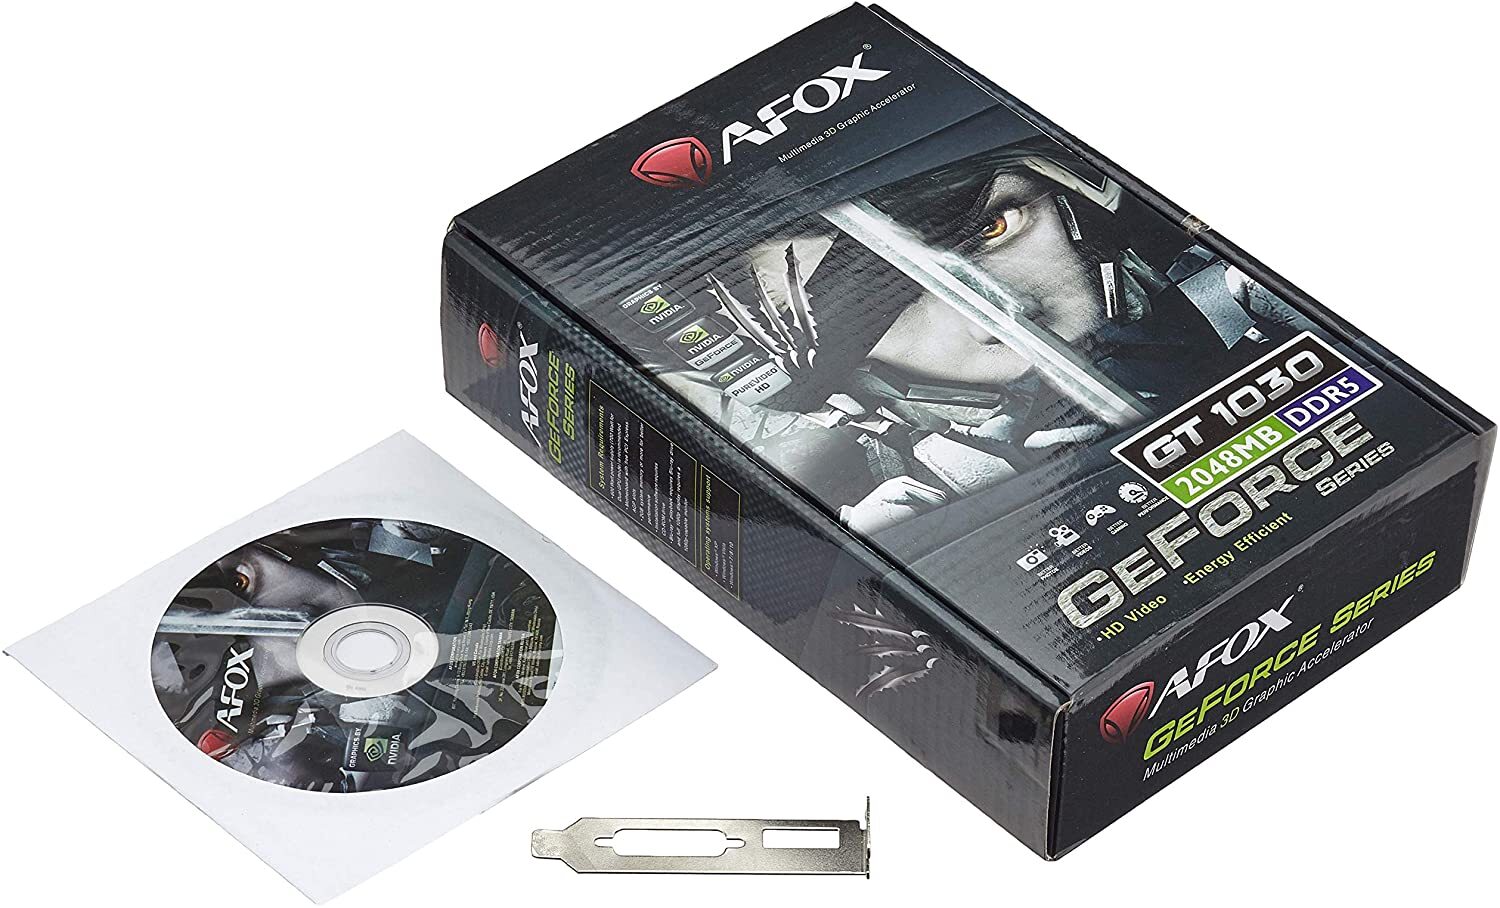 Card đồ họa - VGA Card Afox Geforce GT 1030 2GB GDDR5